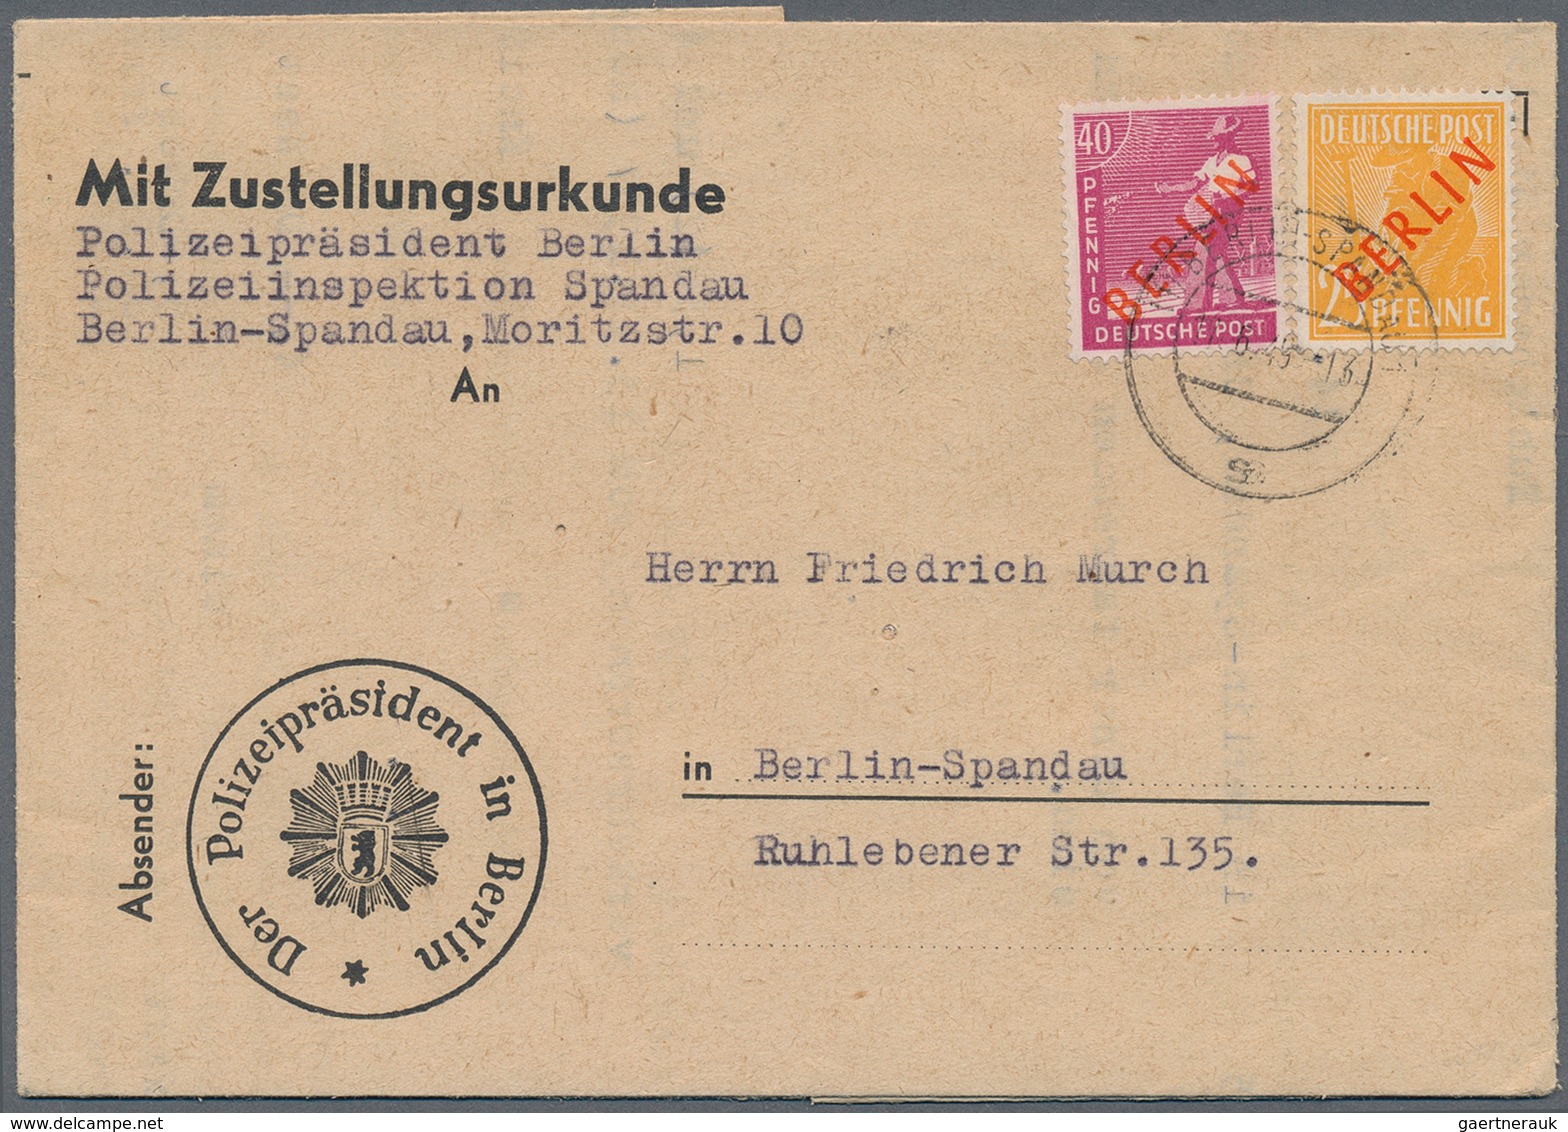 32485 Berlin: 1948/70 (ca.), Posten von ca. 38 aussergewöhnlichen (meist ehemalige Einzellos)-Belegen, nah